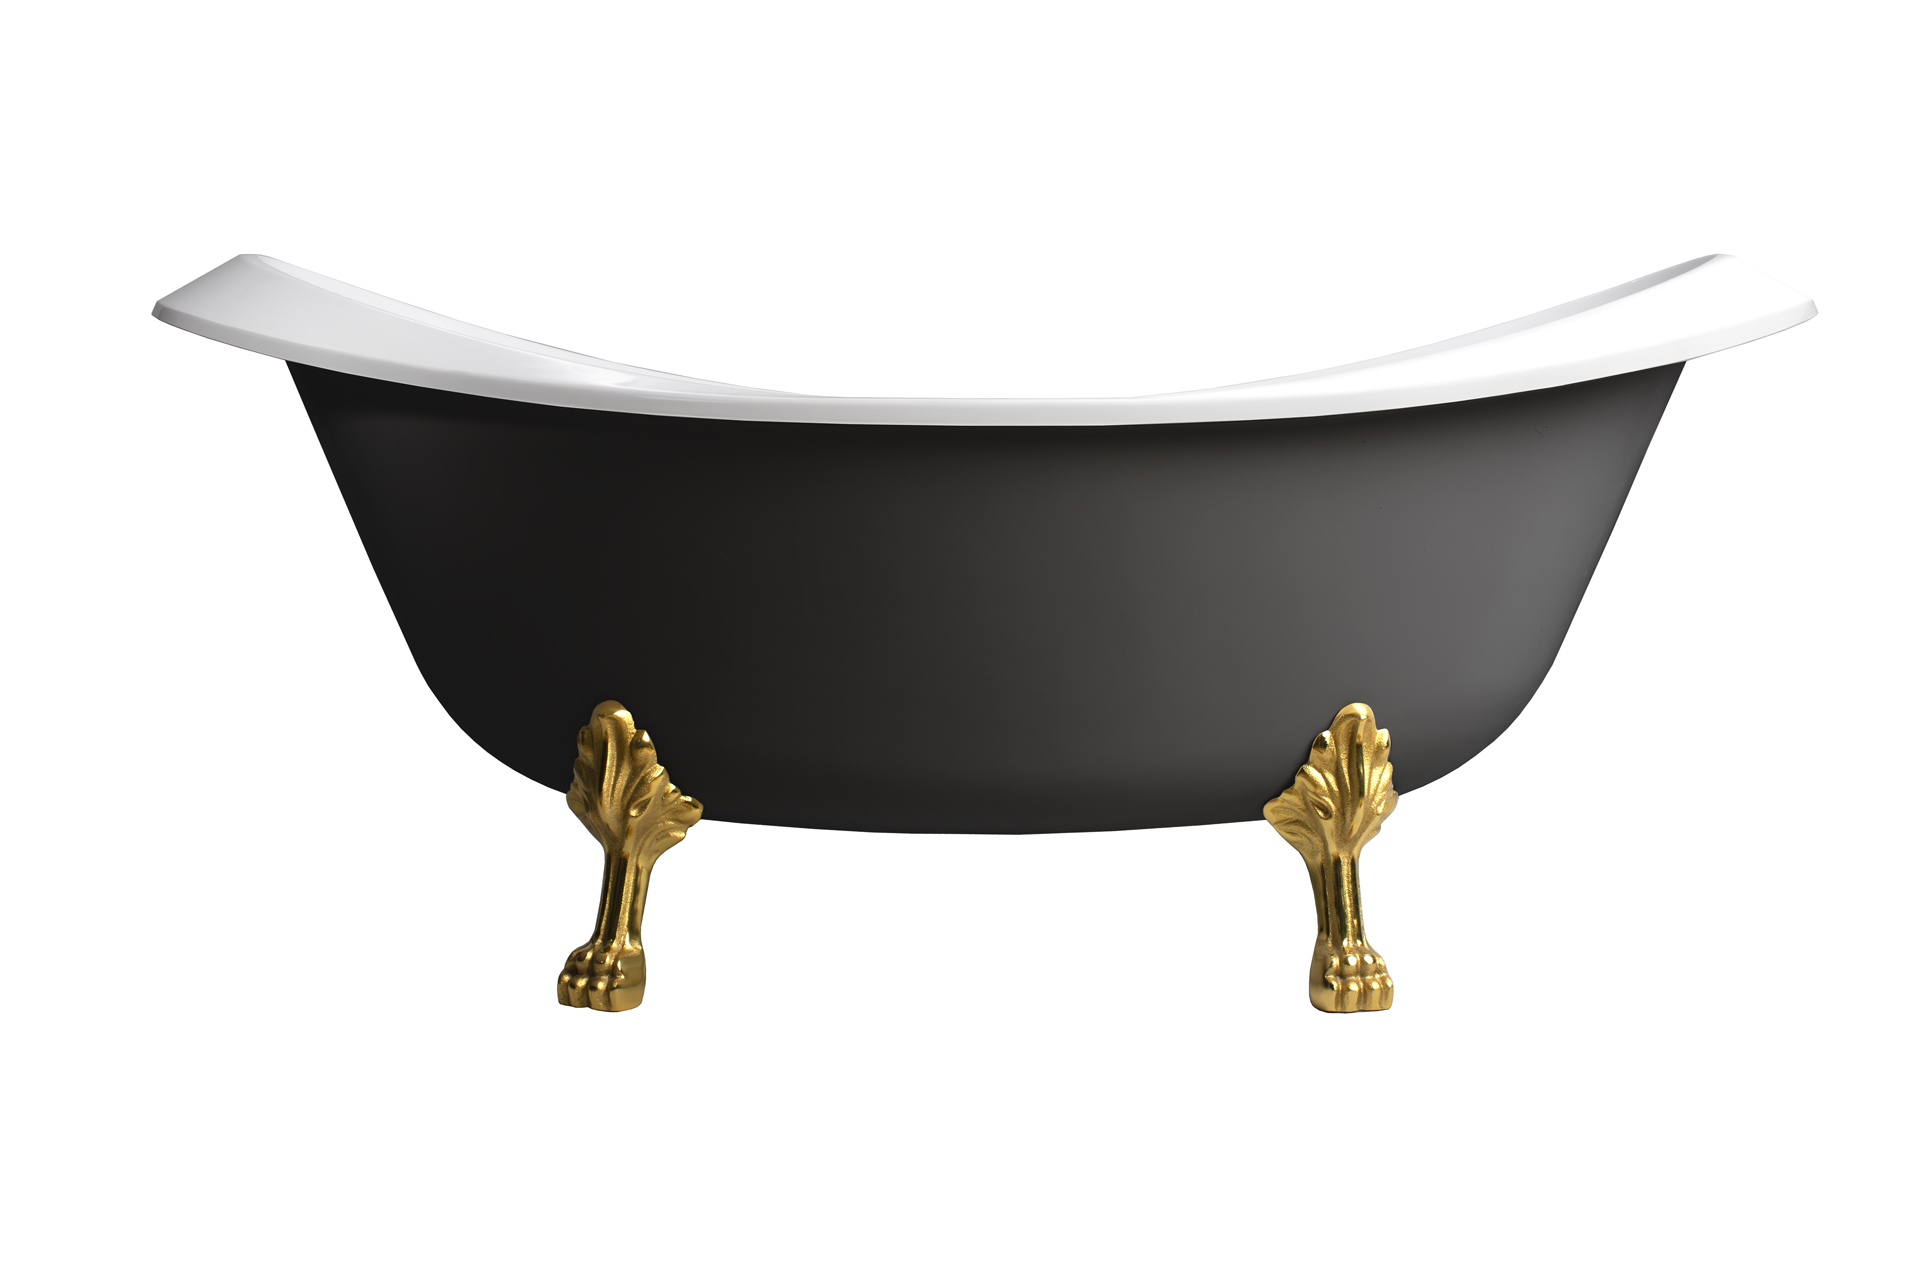 Ванна Ромео ВР-1750, черный, комплект ног покрытие золото